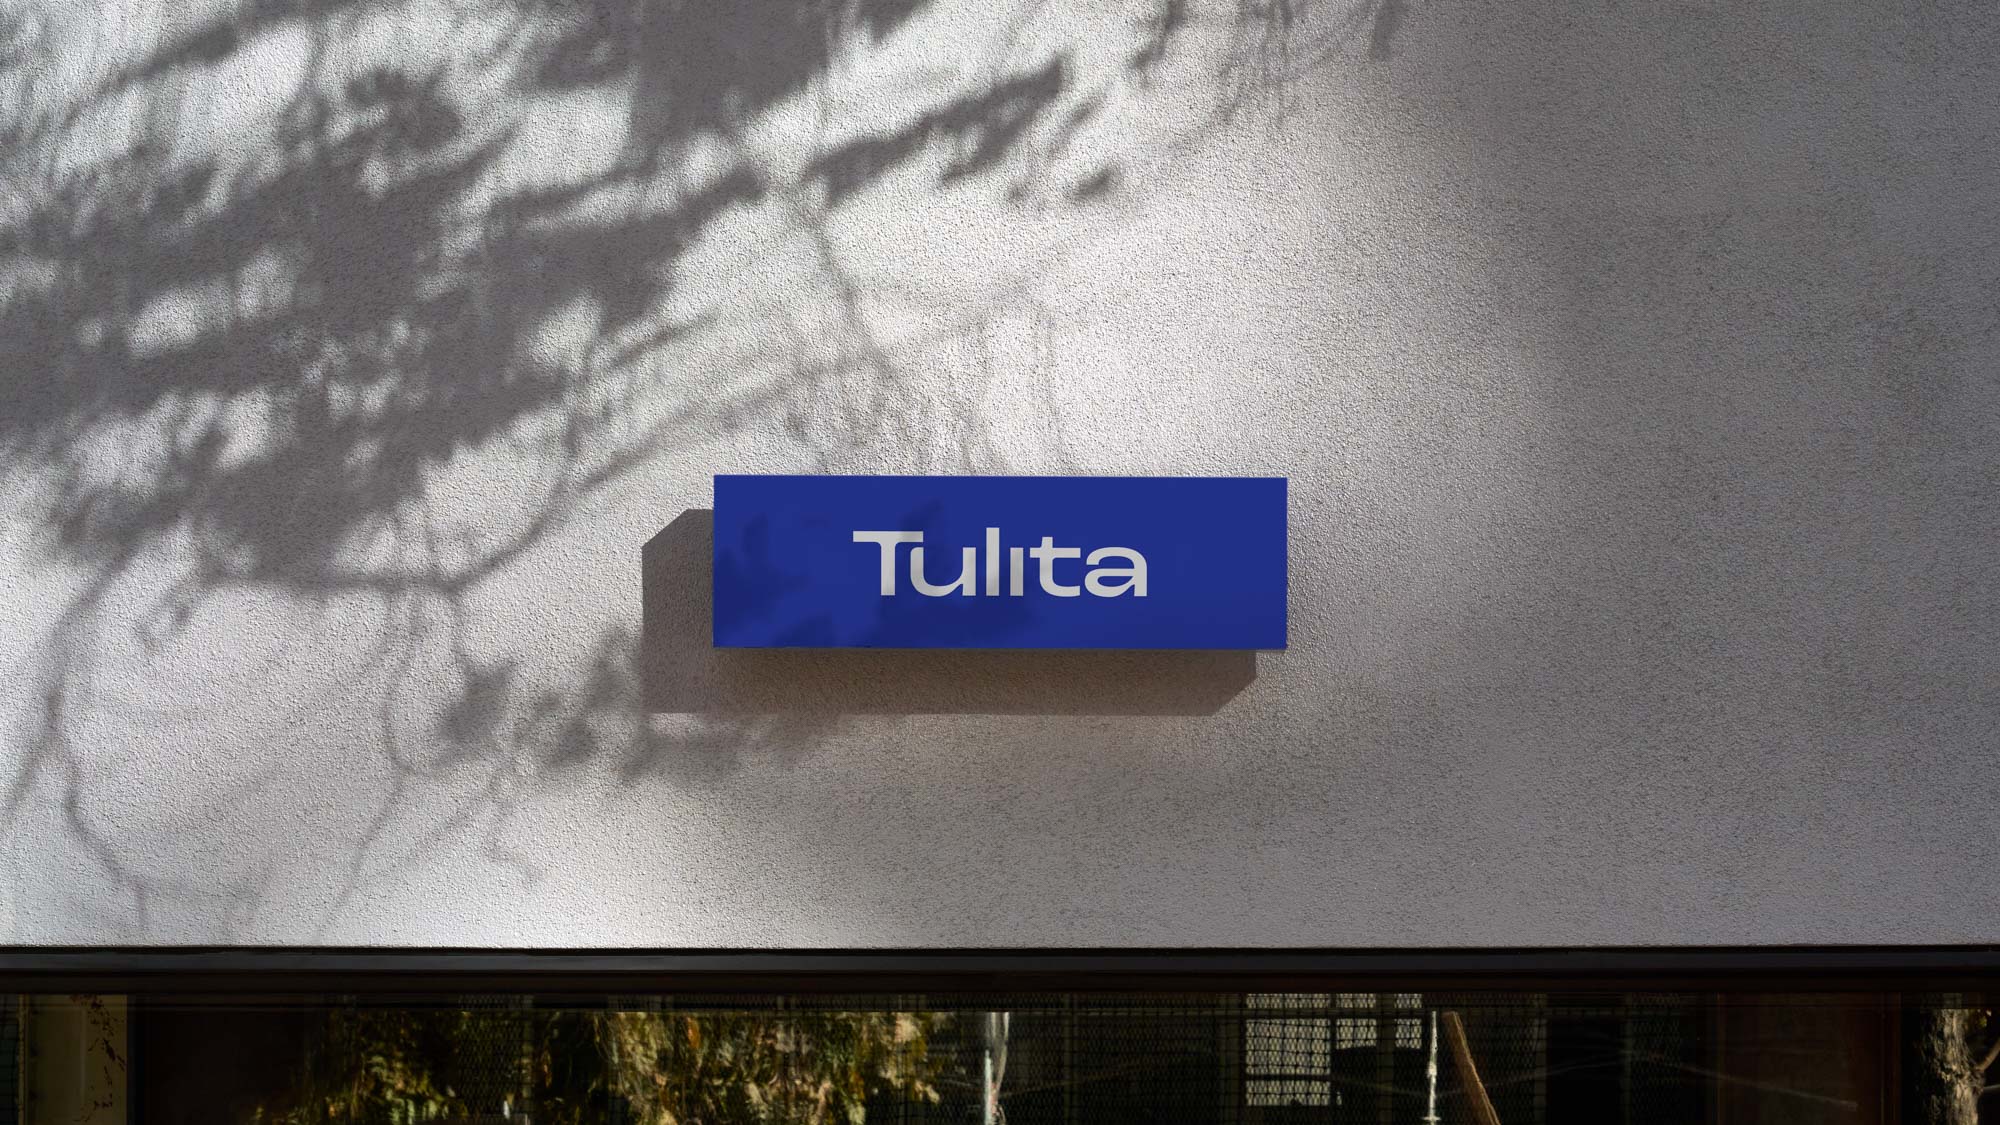 Tulita